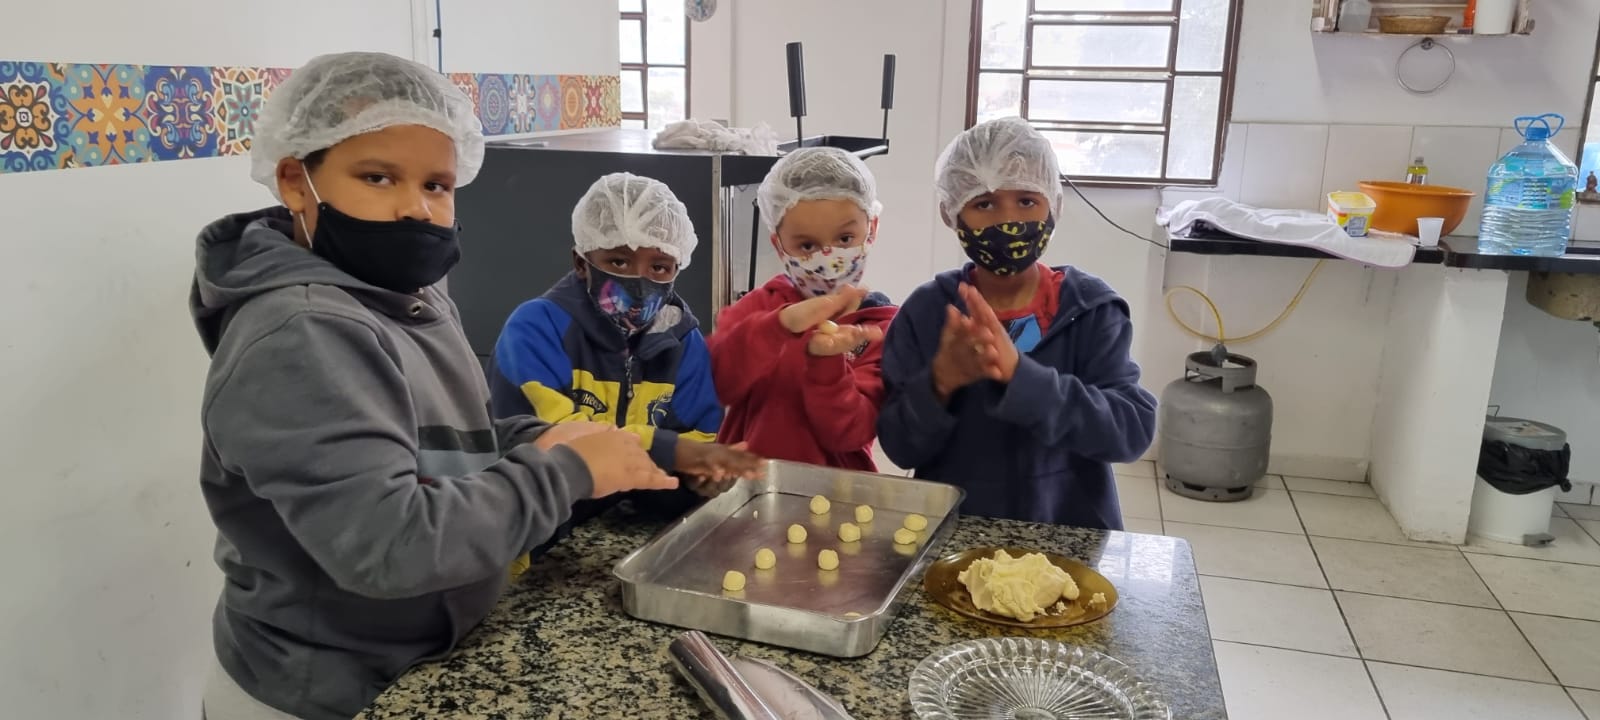 Quatro crianças de máscara e touca higiênica em uma cozinha preparando biscoitos de maizena. Na frente deles tem uma mesa com uma forma e pratos com a massa do biscoito.  